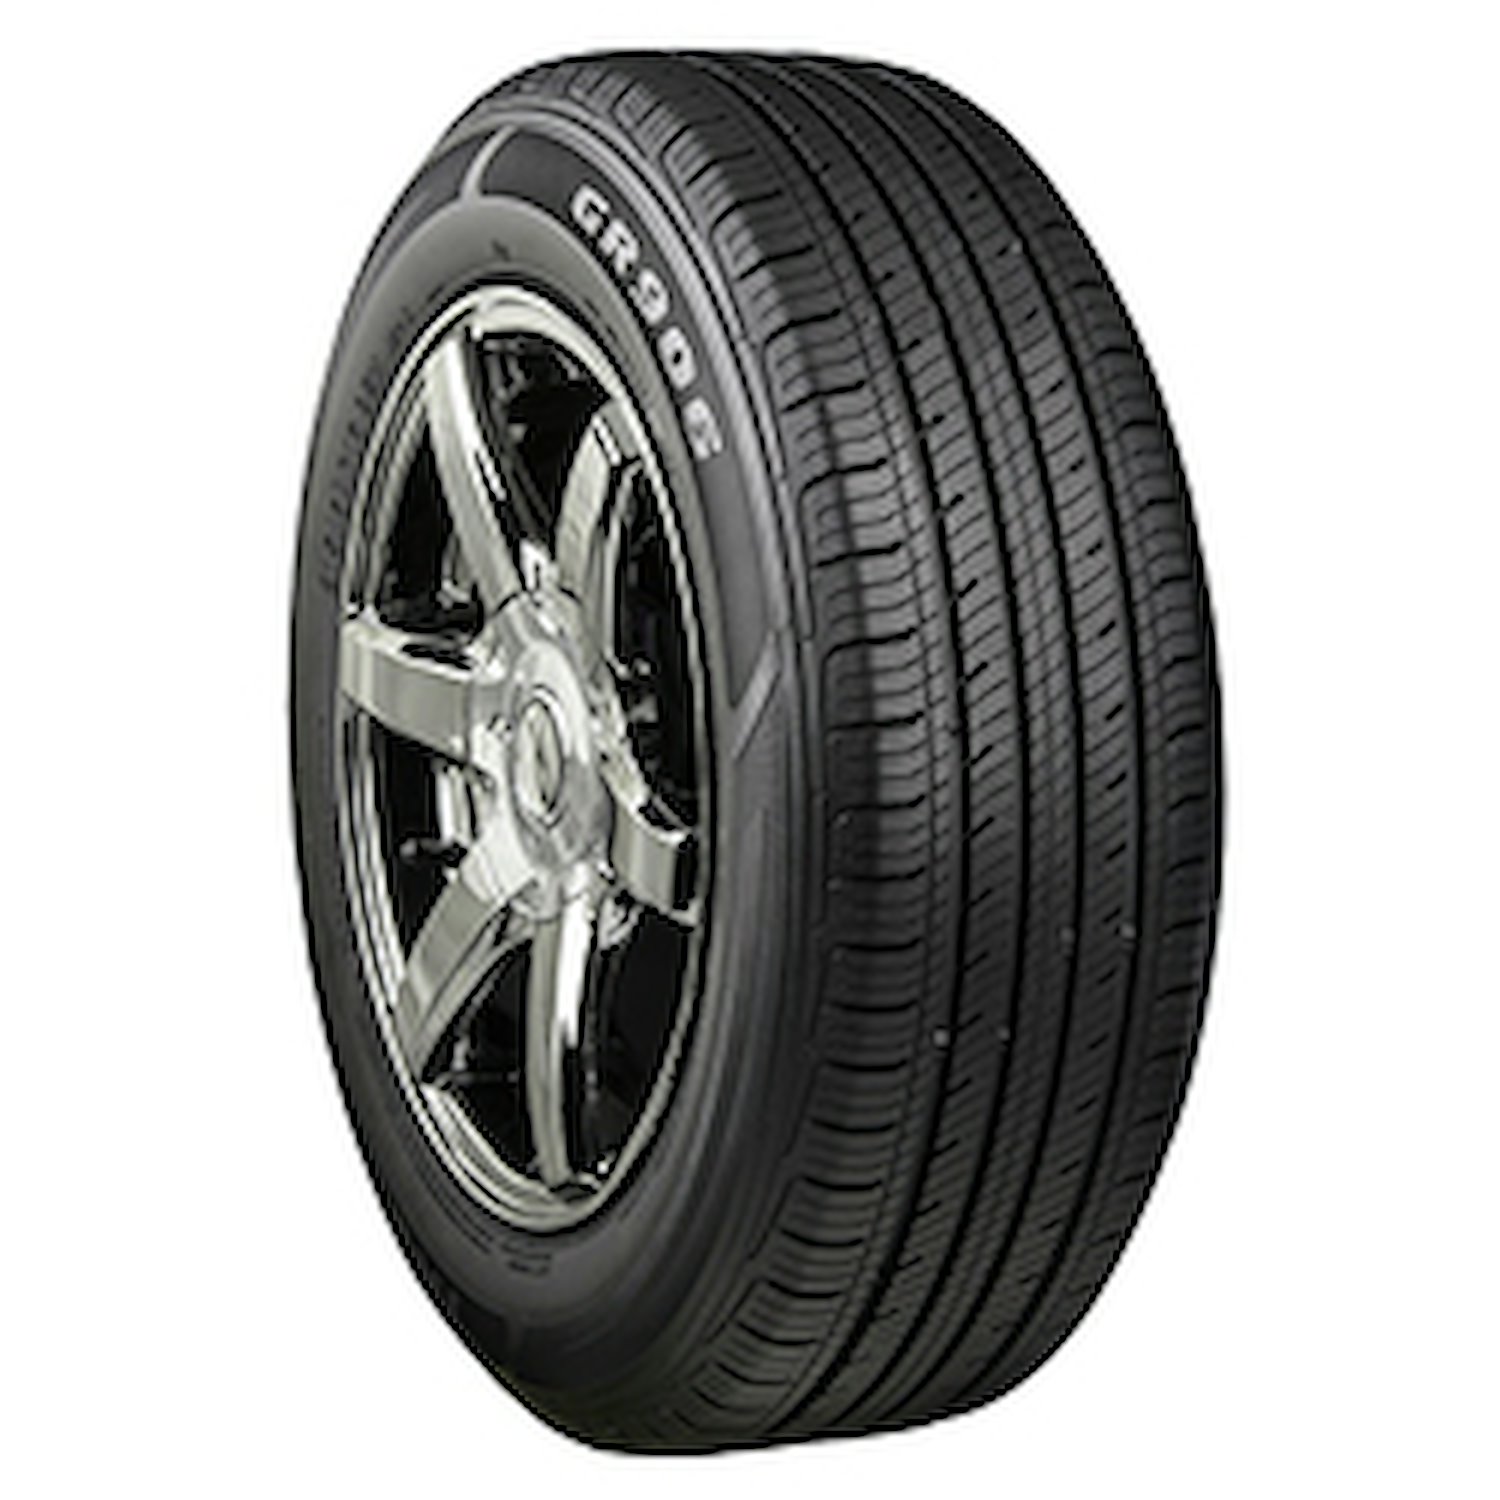 GR906 Tire, 235/60R17 102H